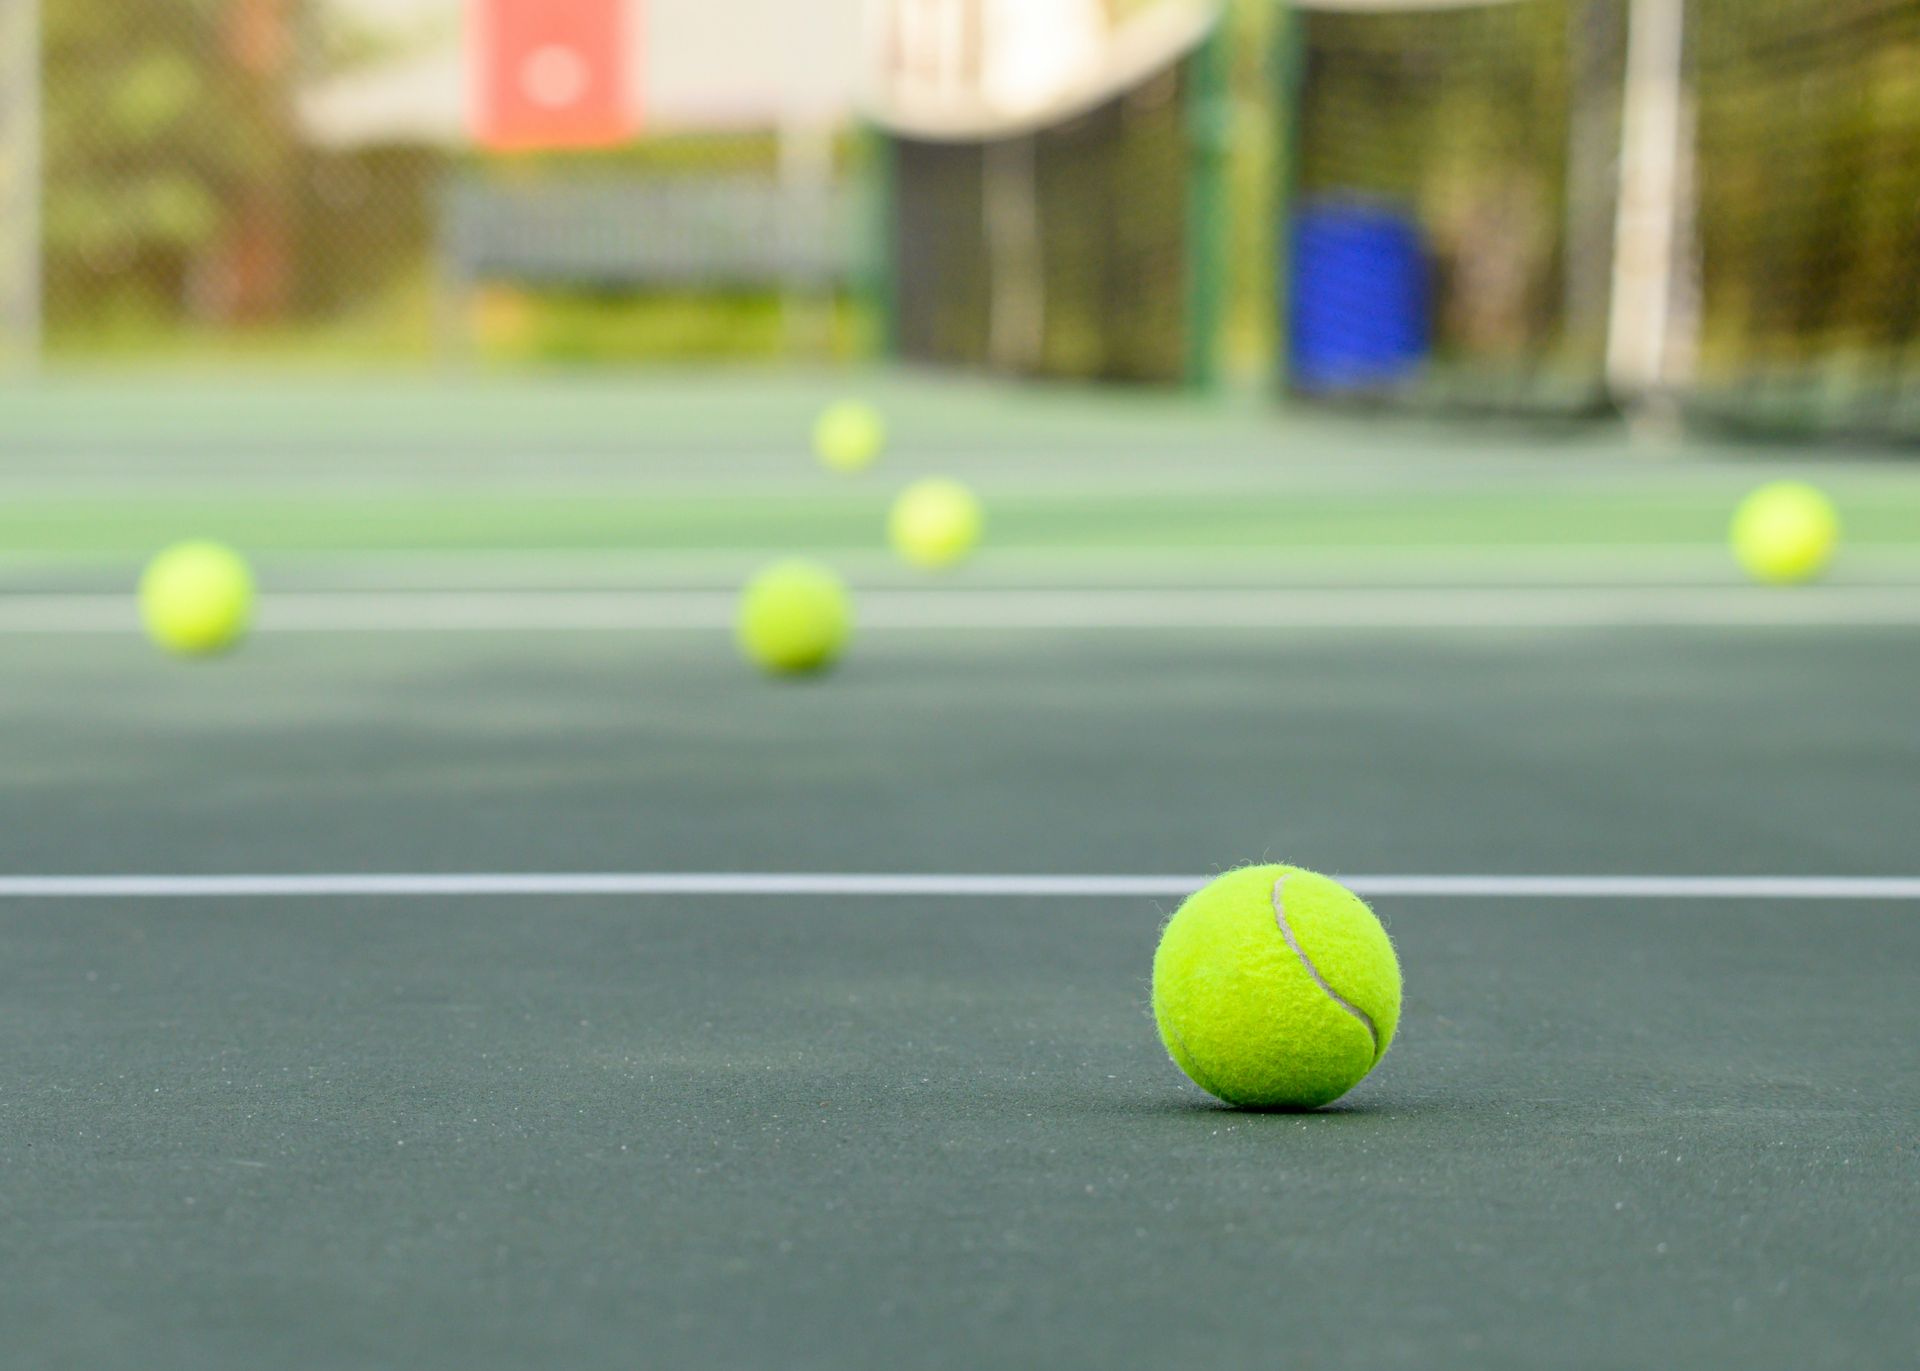 A close up of a tennis ball on a tennis court.